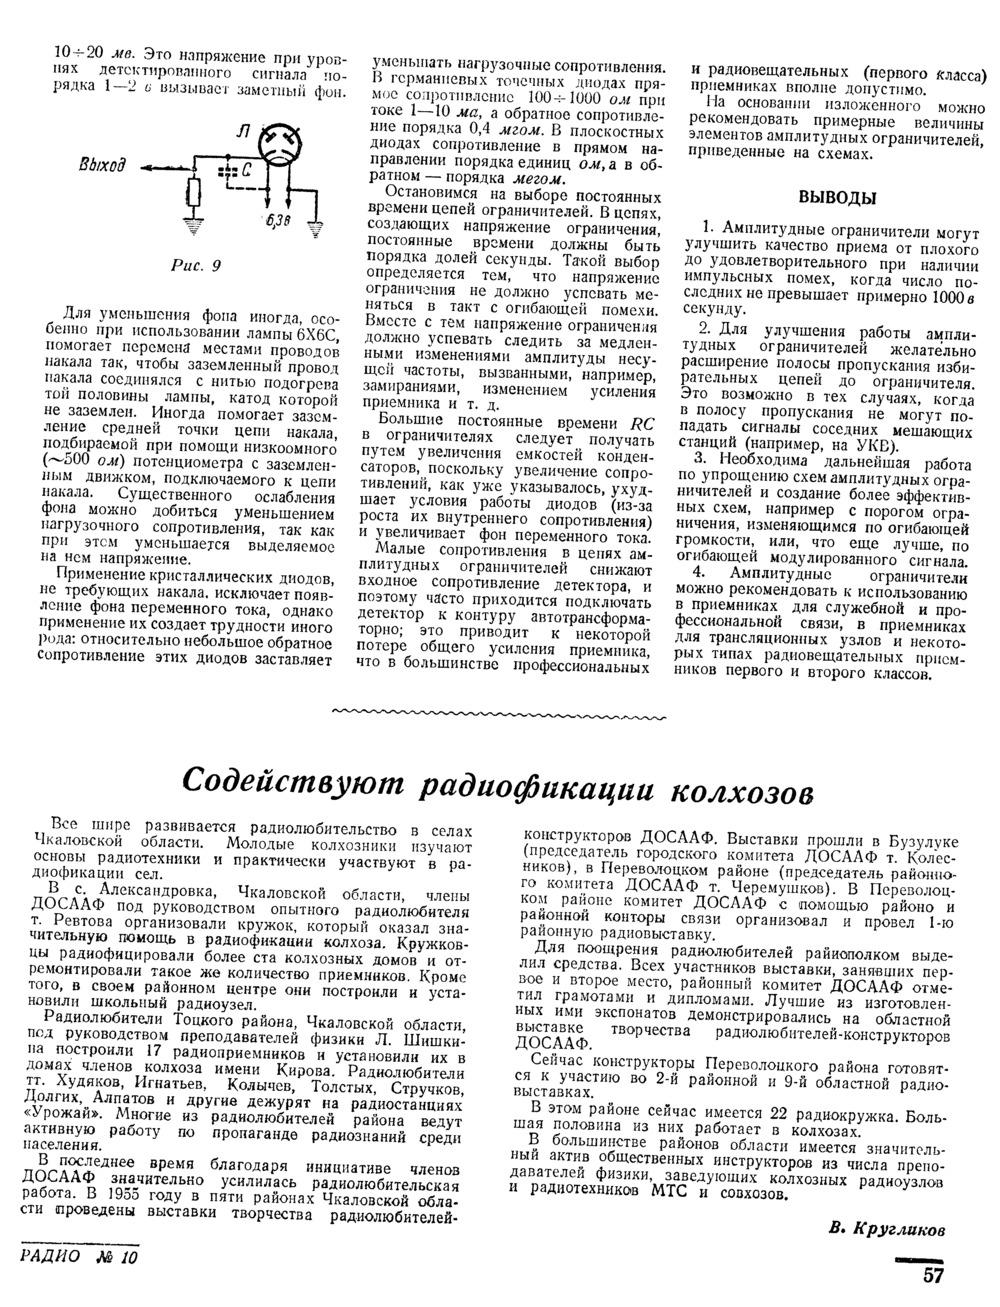 Стр. 57 журнала «Радио» № 10 за 1955 год